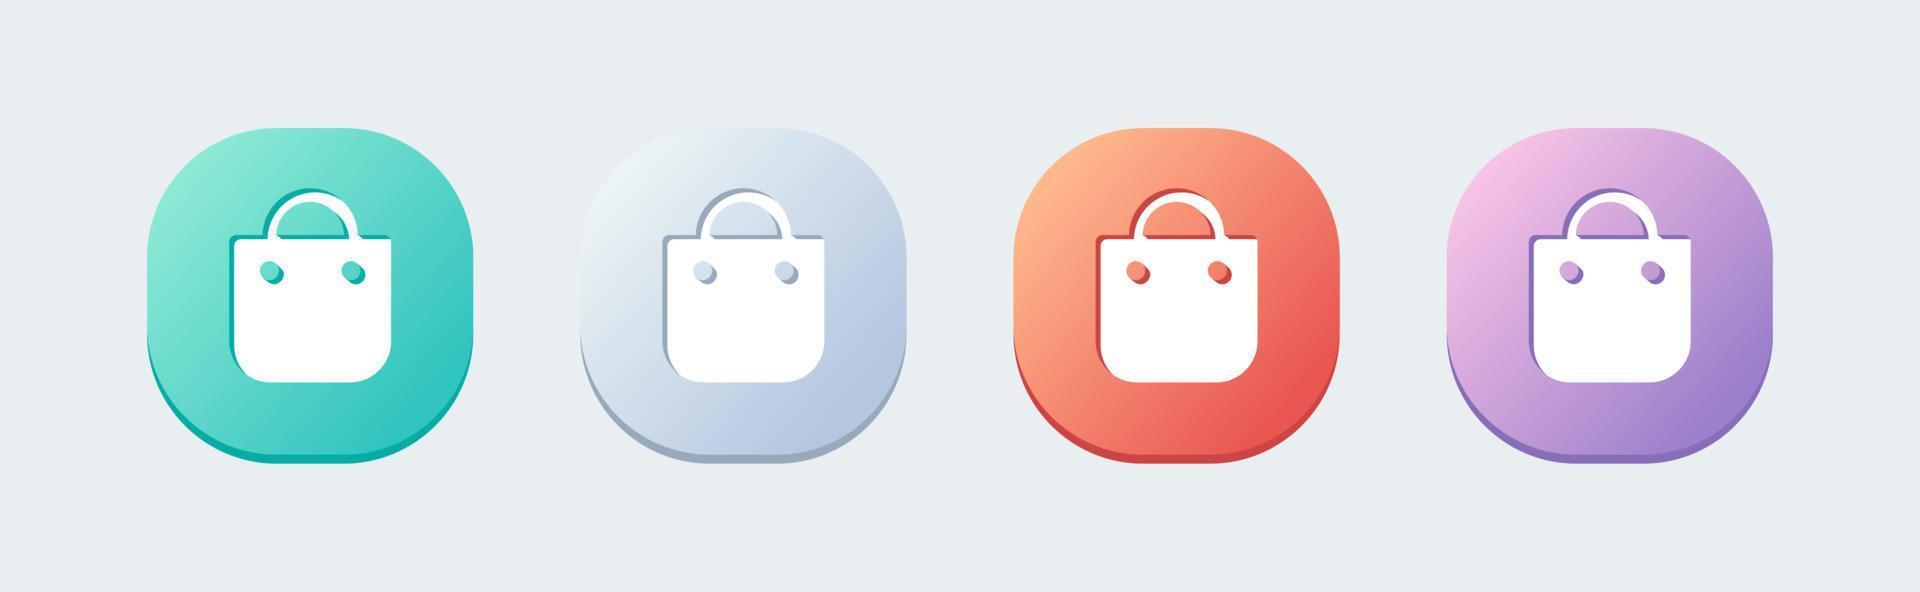 shoping tas solide icoon in platte ontwerpstijl. winkeltas teken voor web of commerce apps interface. vector